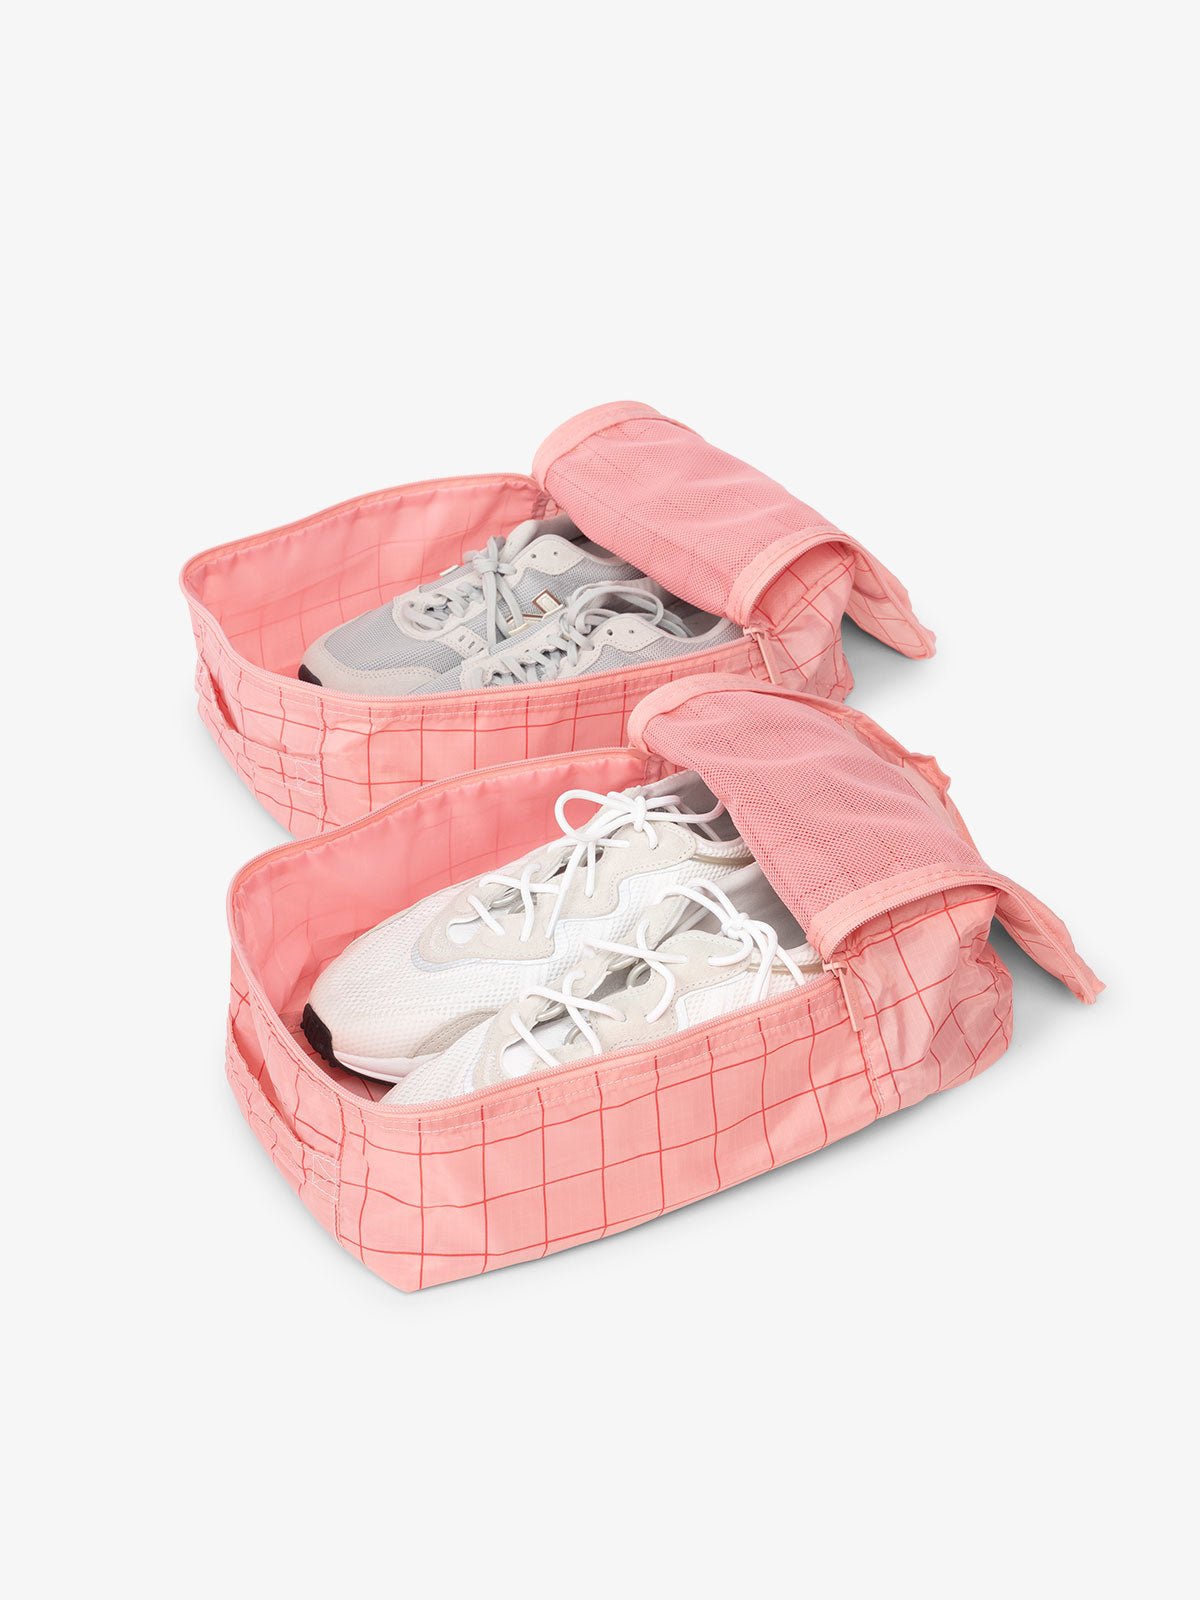 CALPAK Compakt shoe bag set with mesh pockets for travel in pink grid pattern